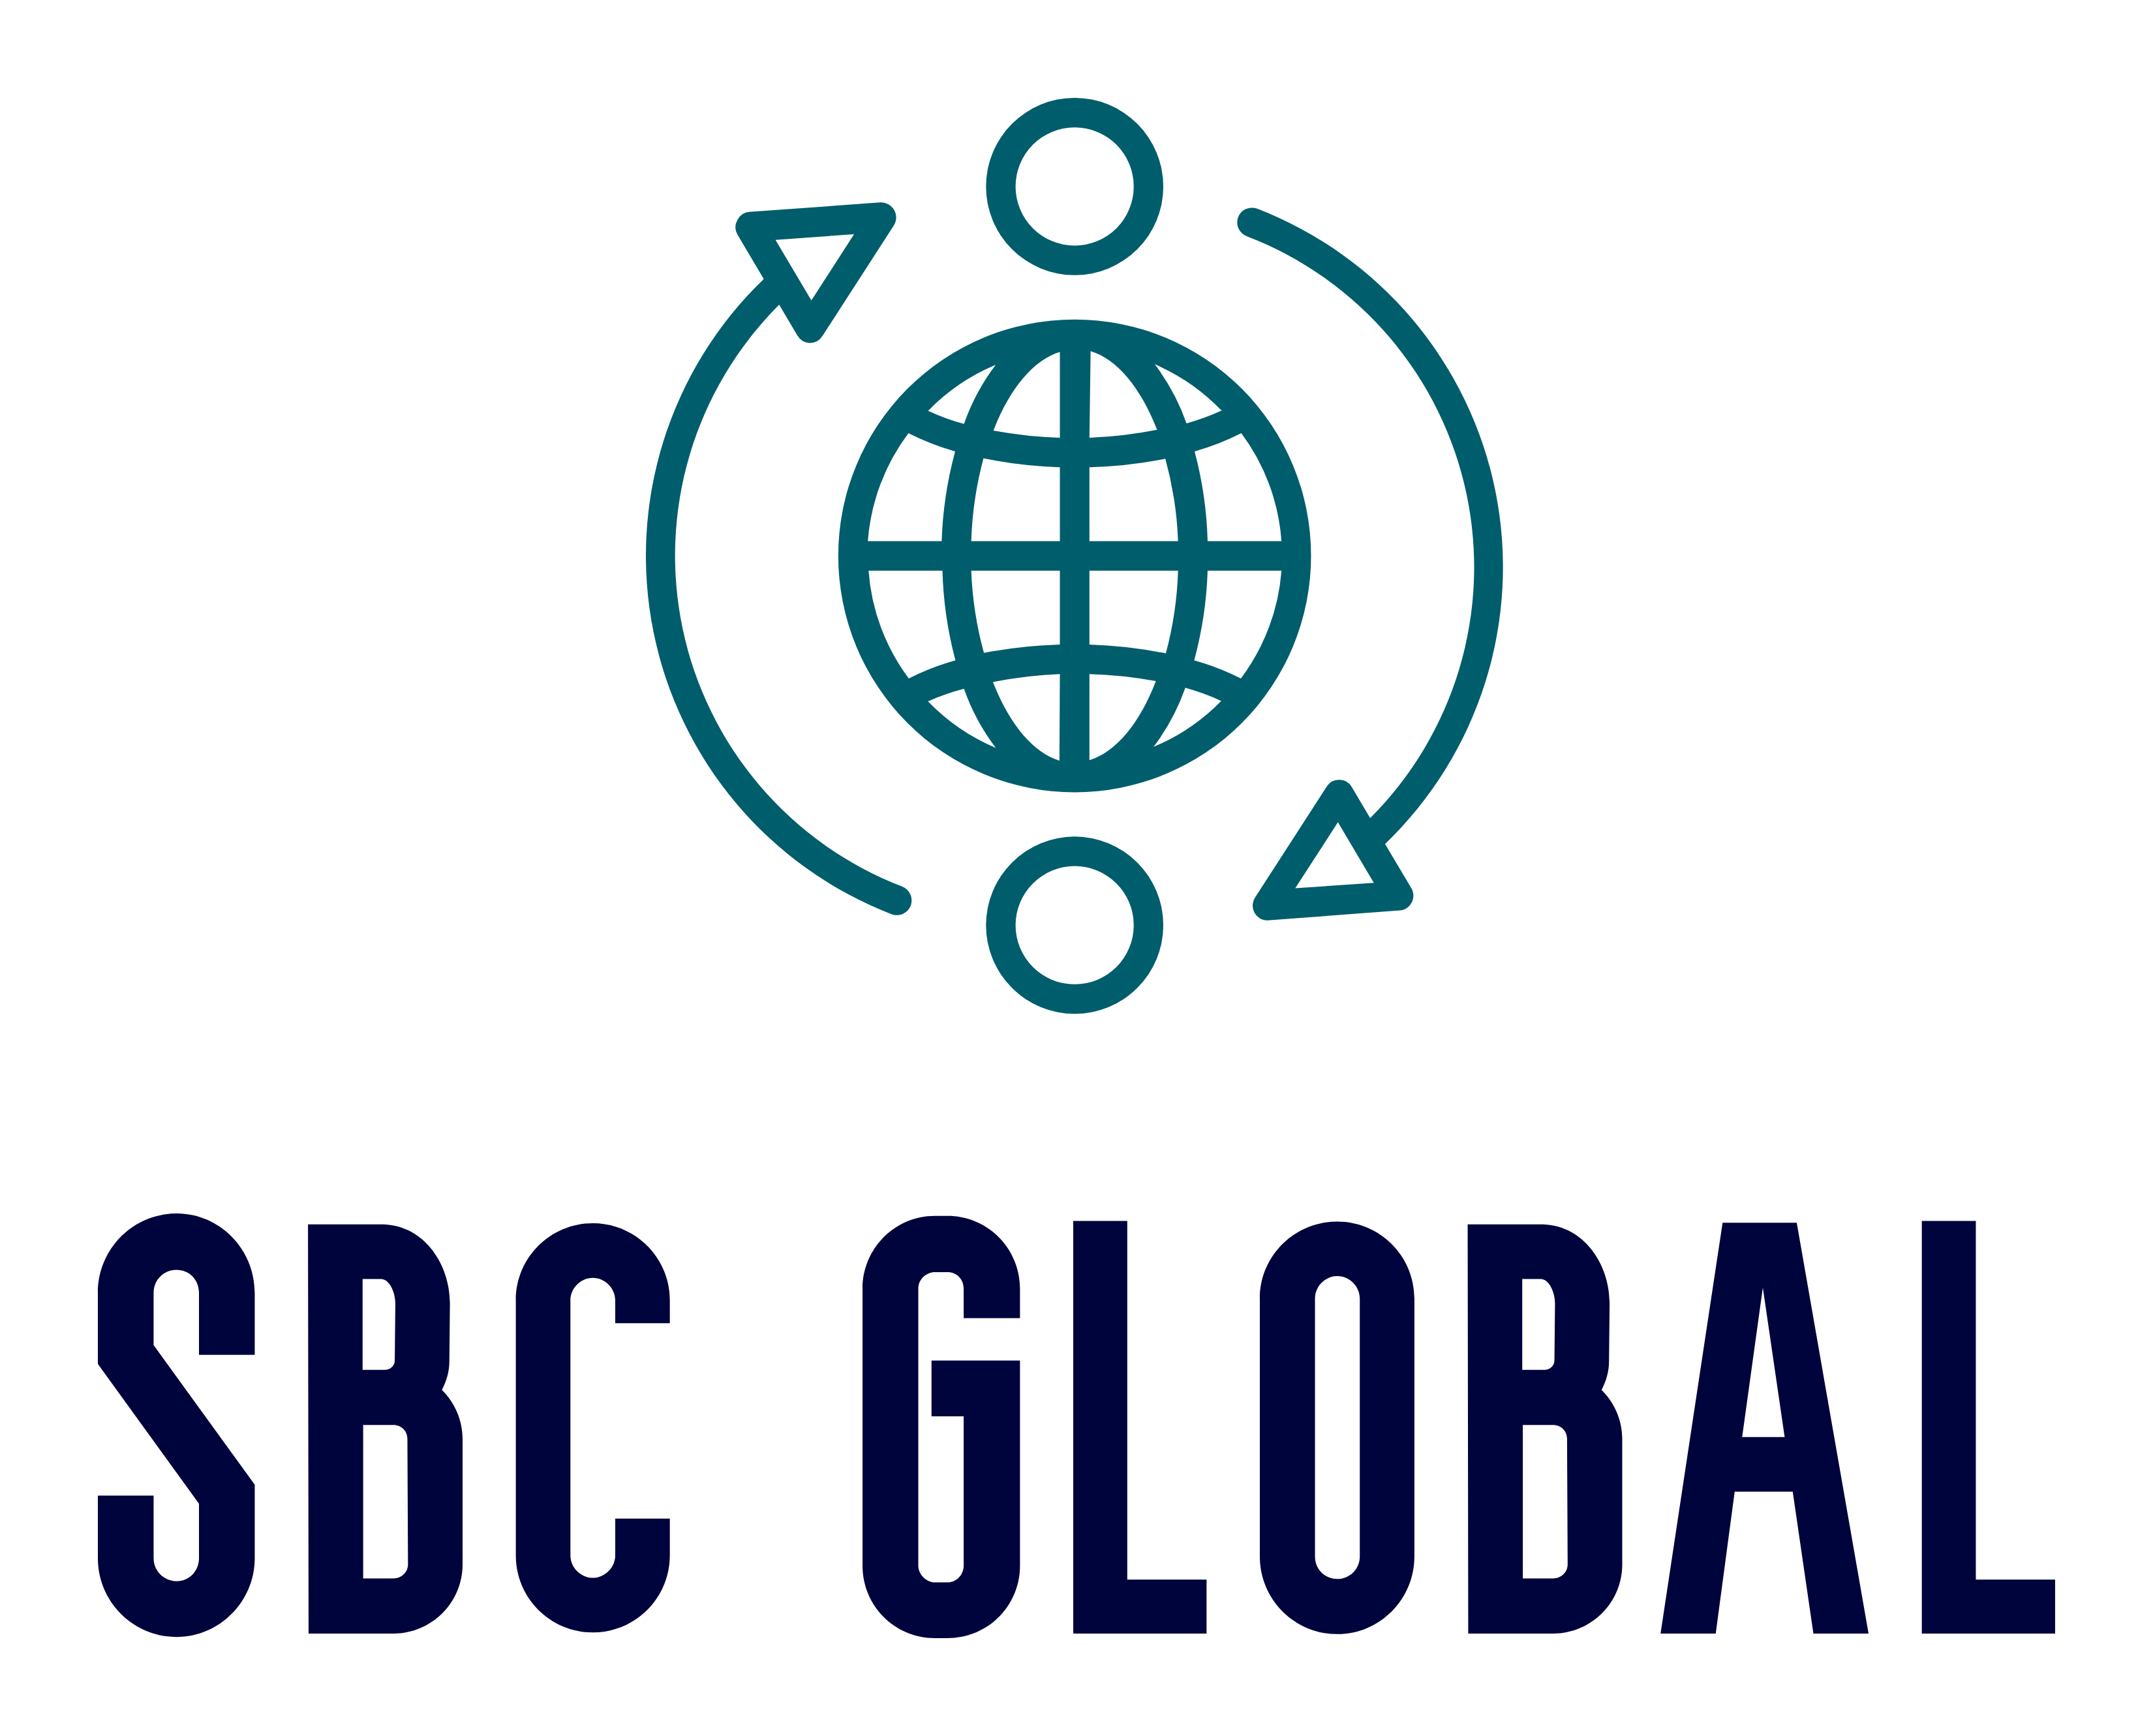 Sbc Global logo small